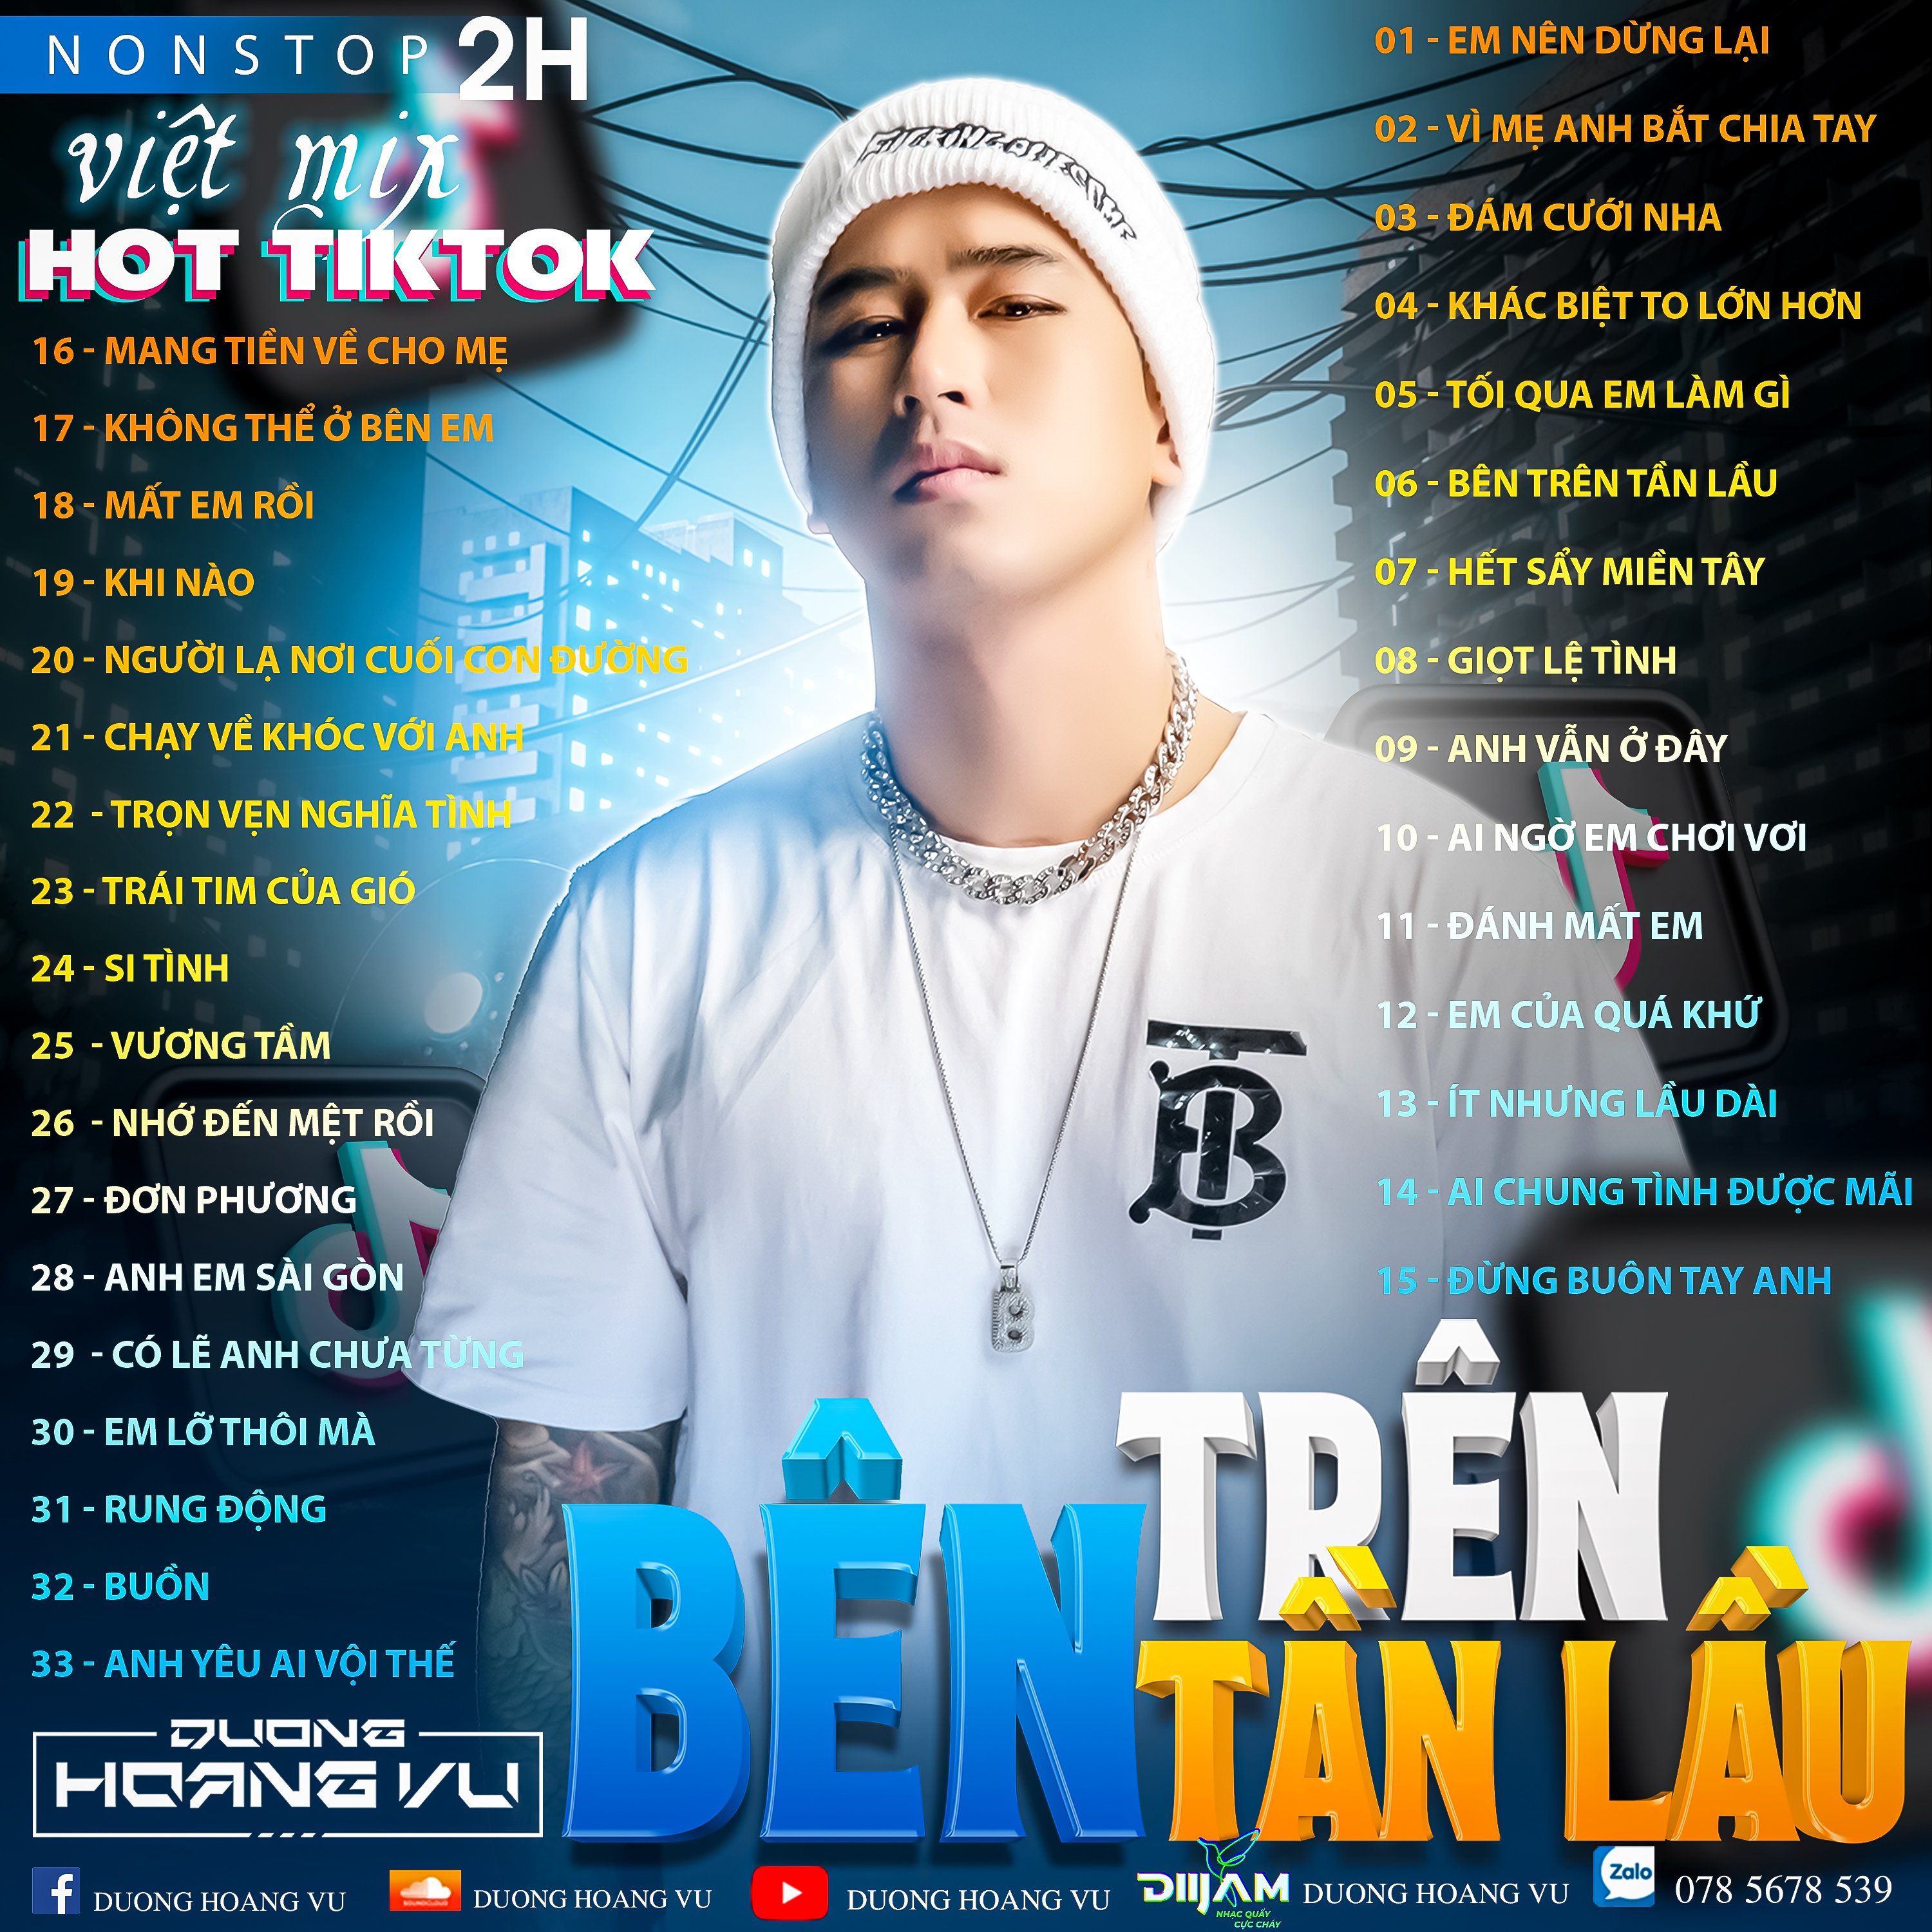 ಡೌನ್ಲೋಡ್ ಮಾಡಿ (Demo ) Nst Việt Mix Hot tiktok 2h - 2022 - DJ Dương Hoàng Vũ Mix Mua Full IB Zalo 078.5678.539